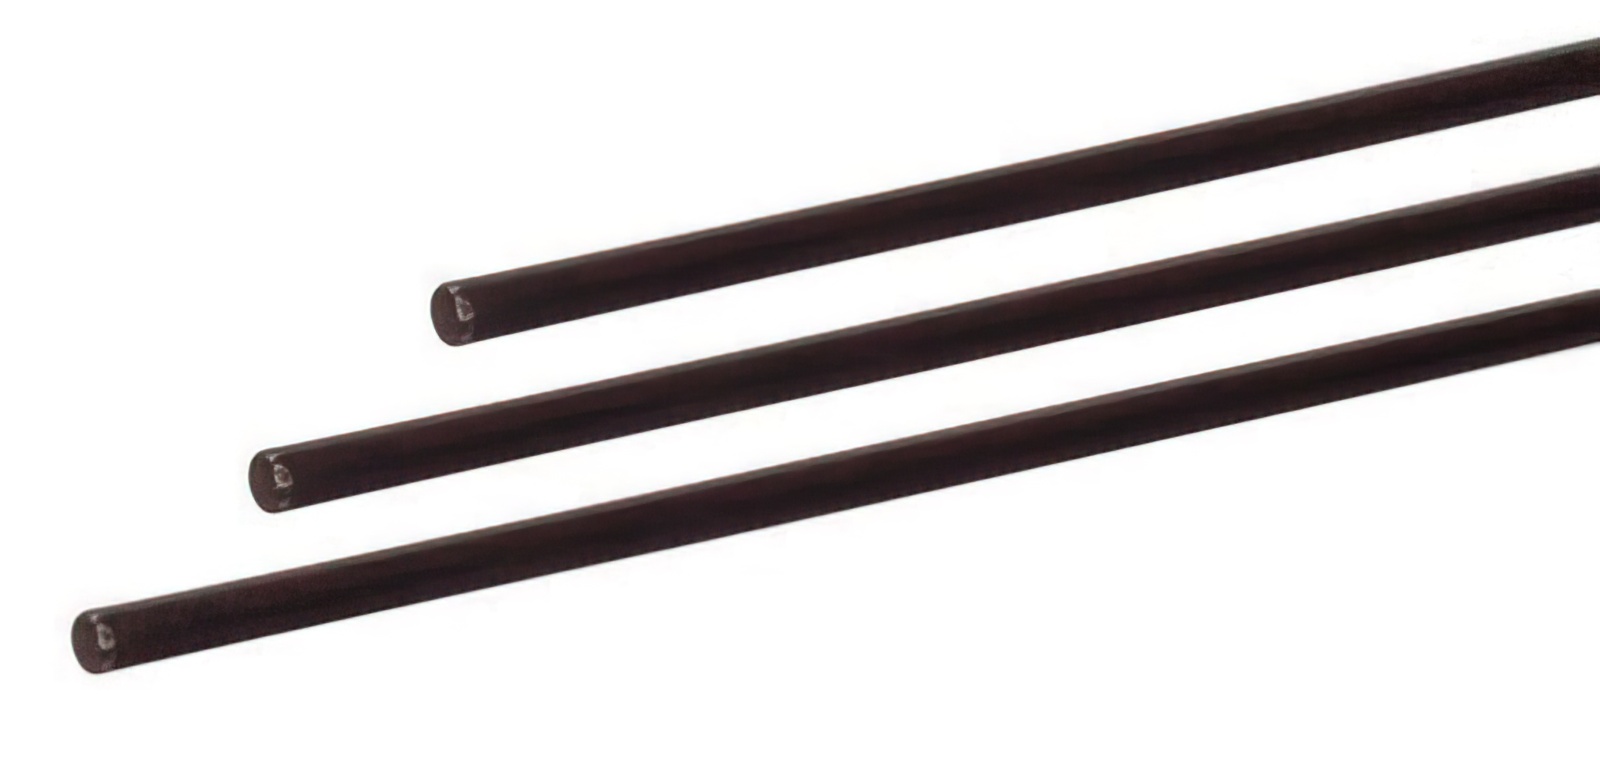 2 Stück - Gfk-Vollstab (Fiberglasstab/Glasfaserstab) 6  mm 200 cm schwarz für Drachen- und Modellbau Basteln Montagen Messebau Industrie Haushalt